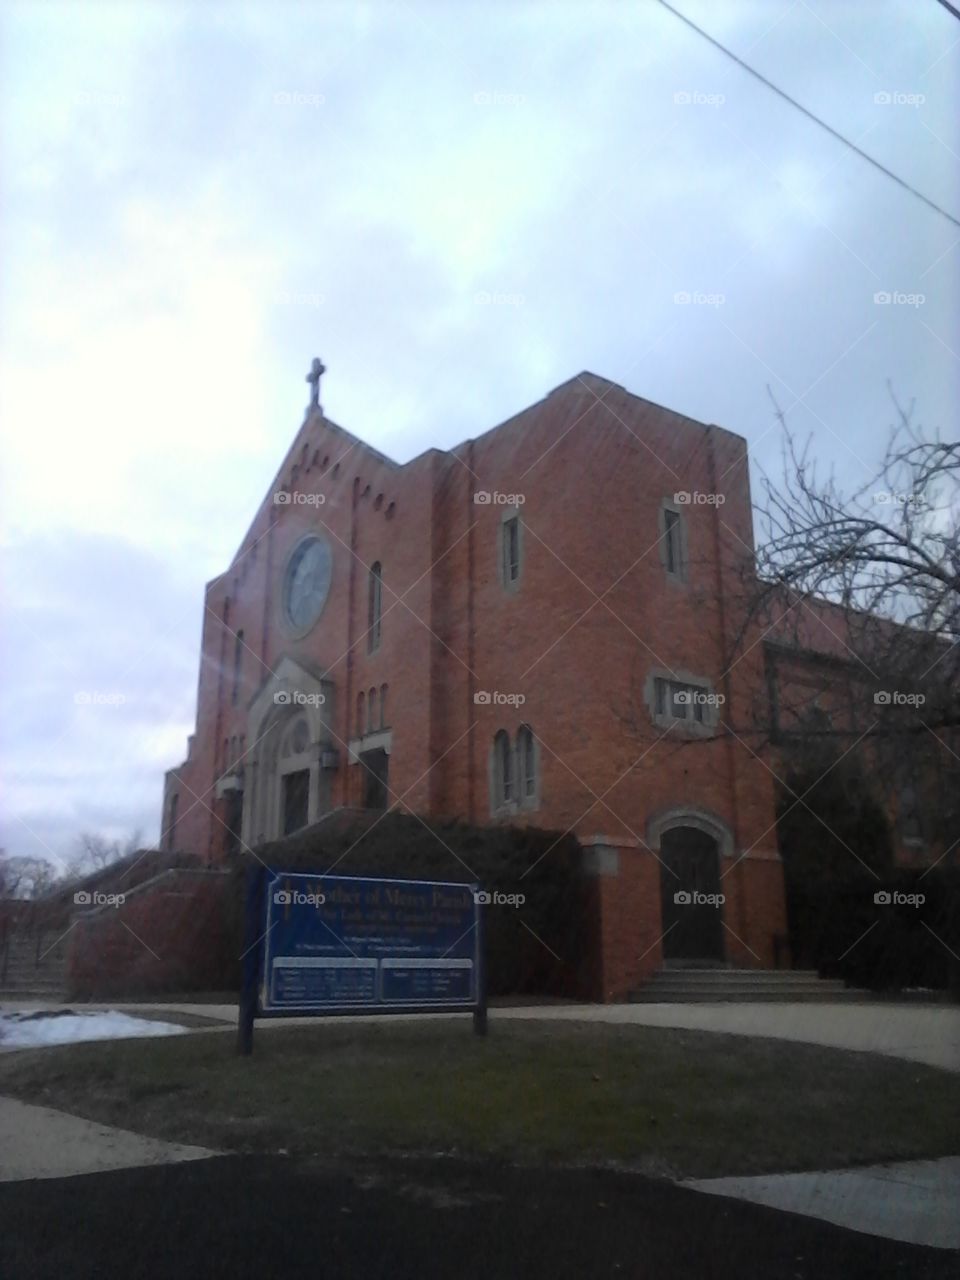 Shining Church